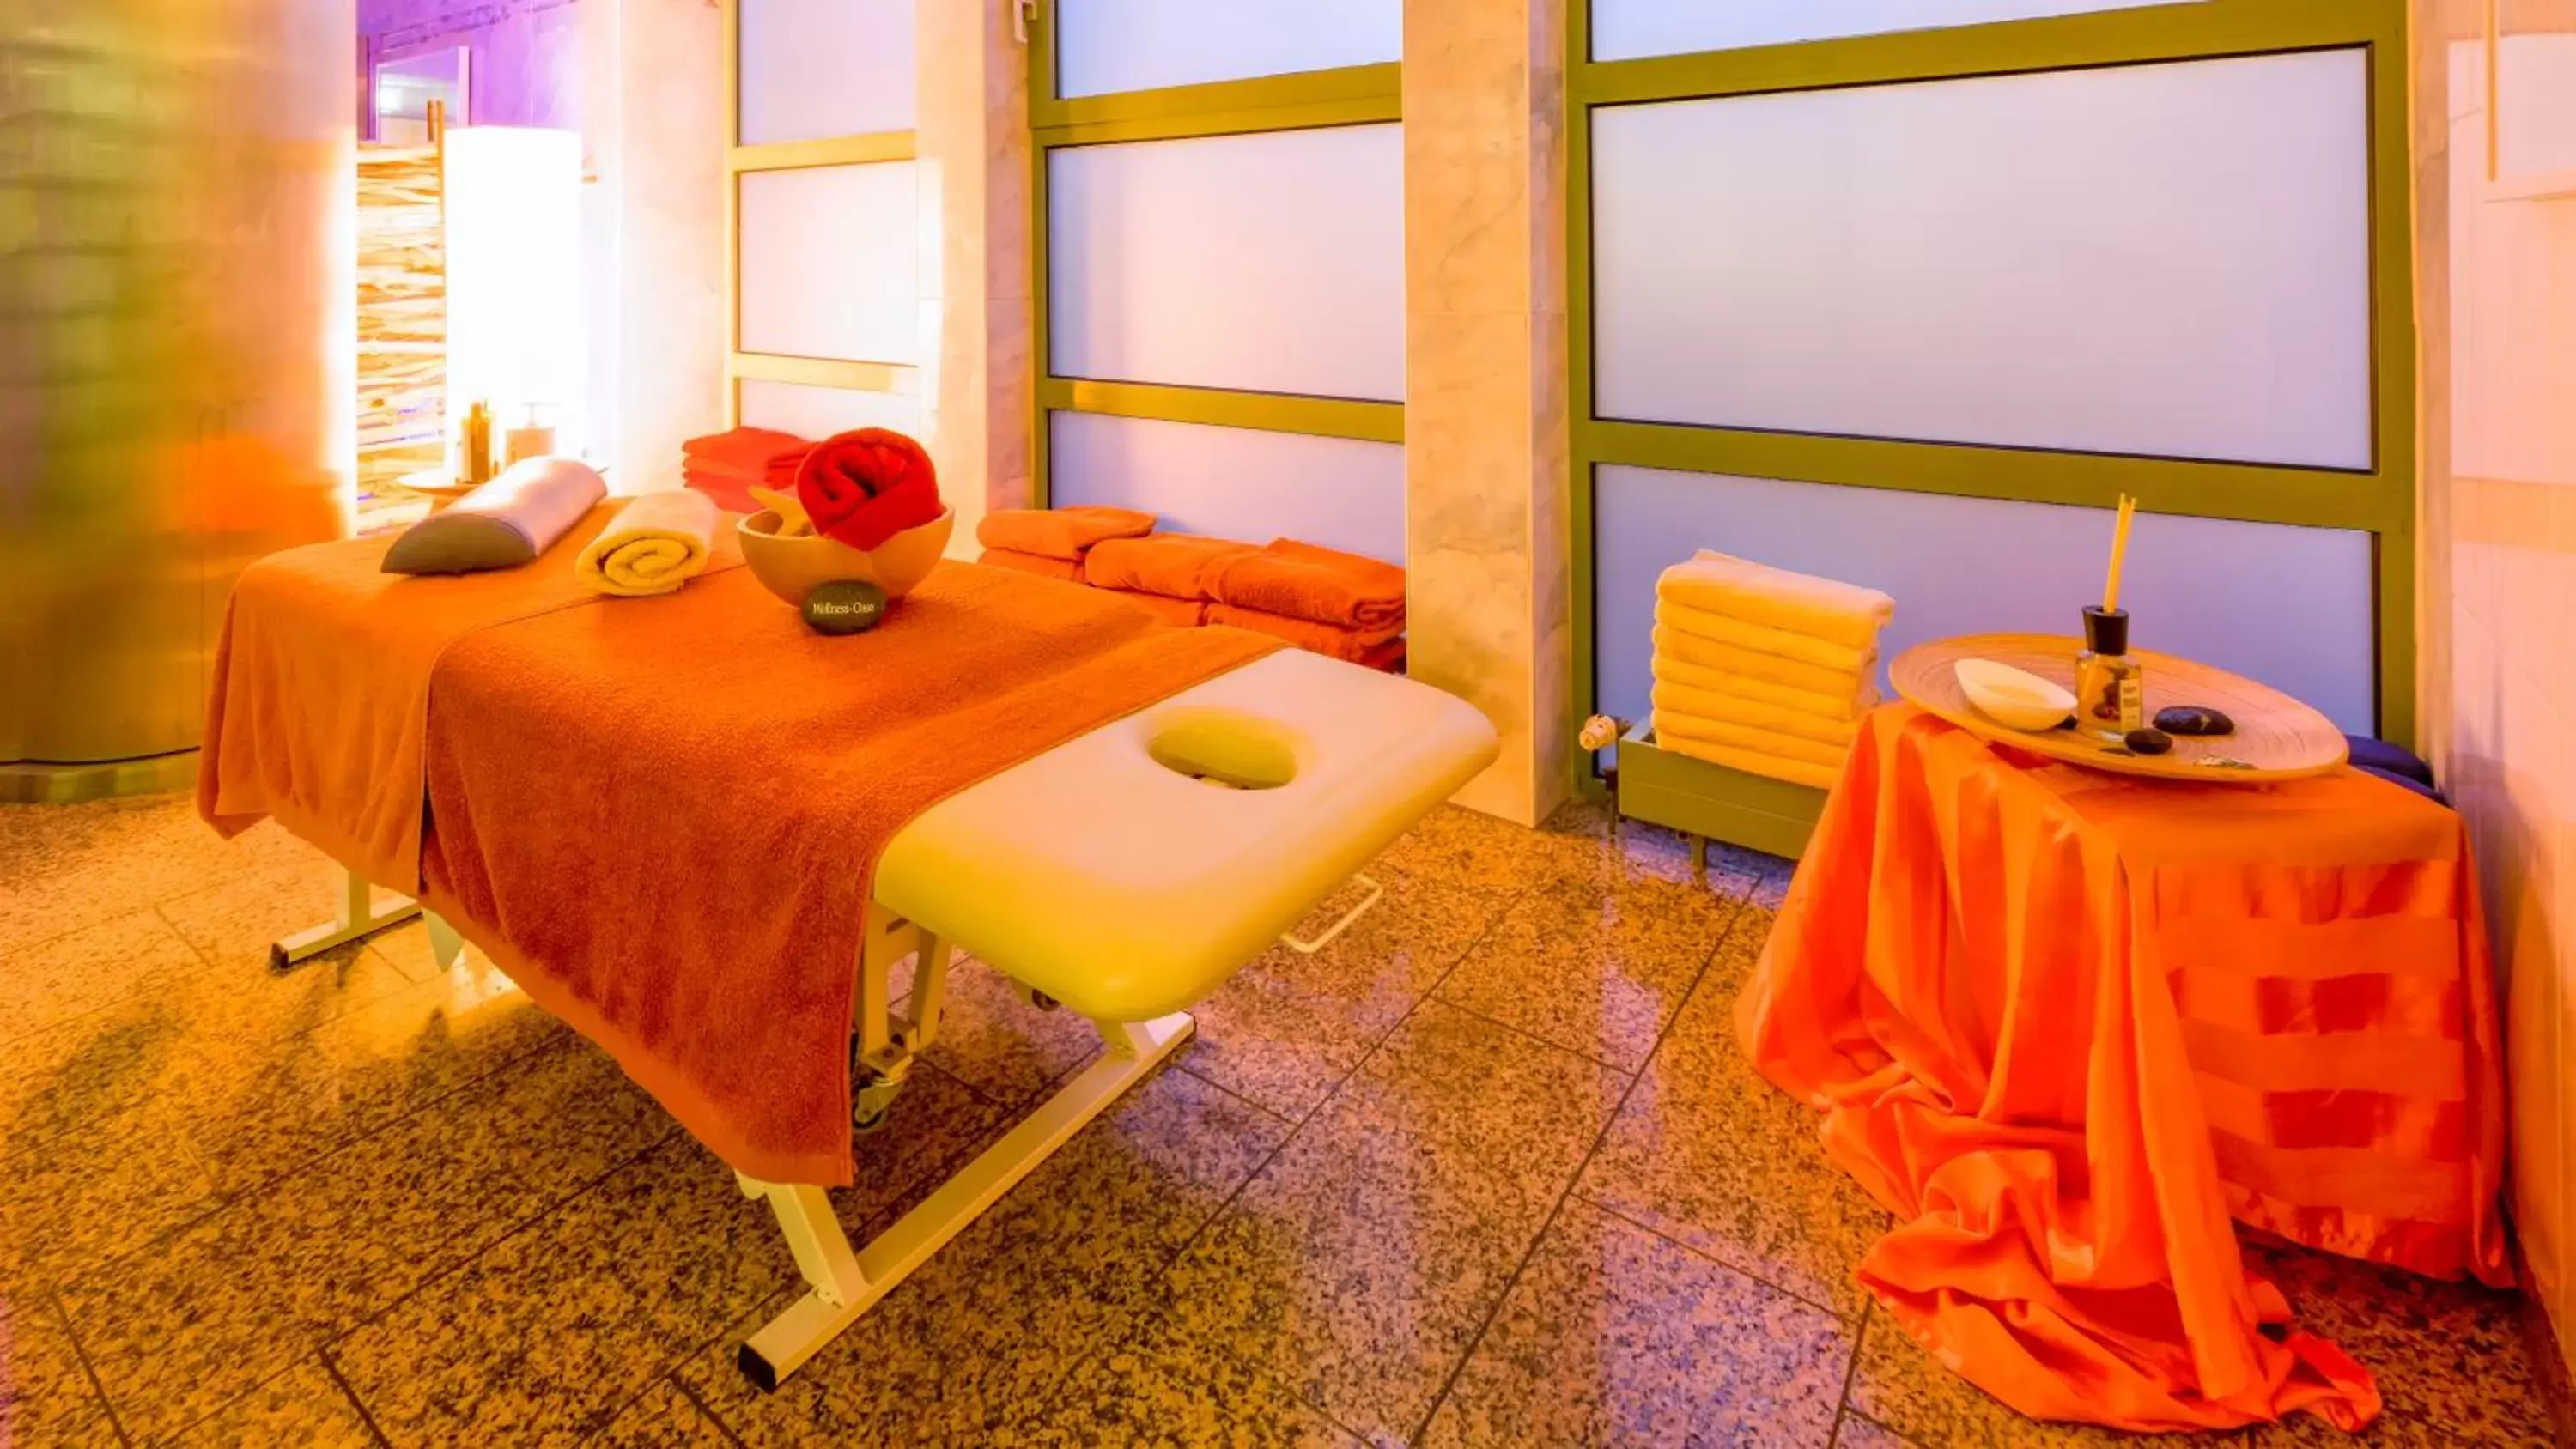 Massage in Michels Thalasso Hotel Nordseehaus